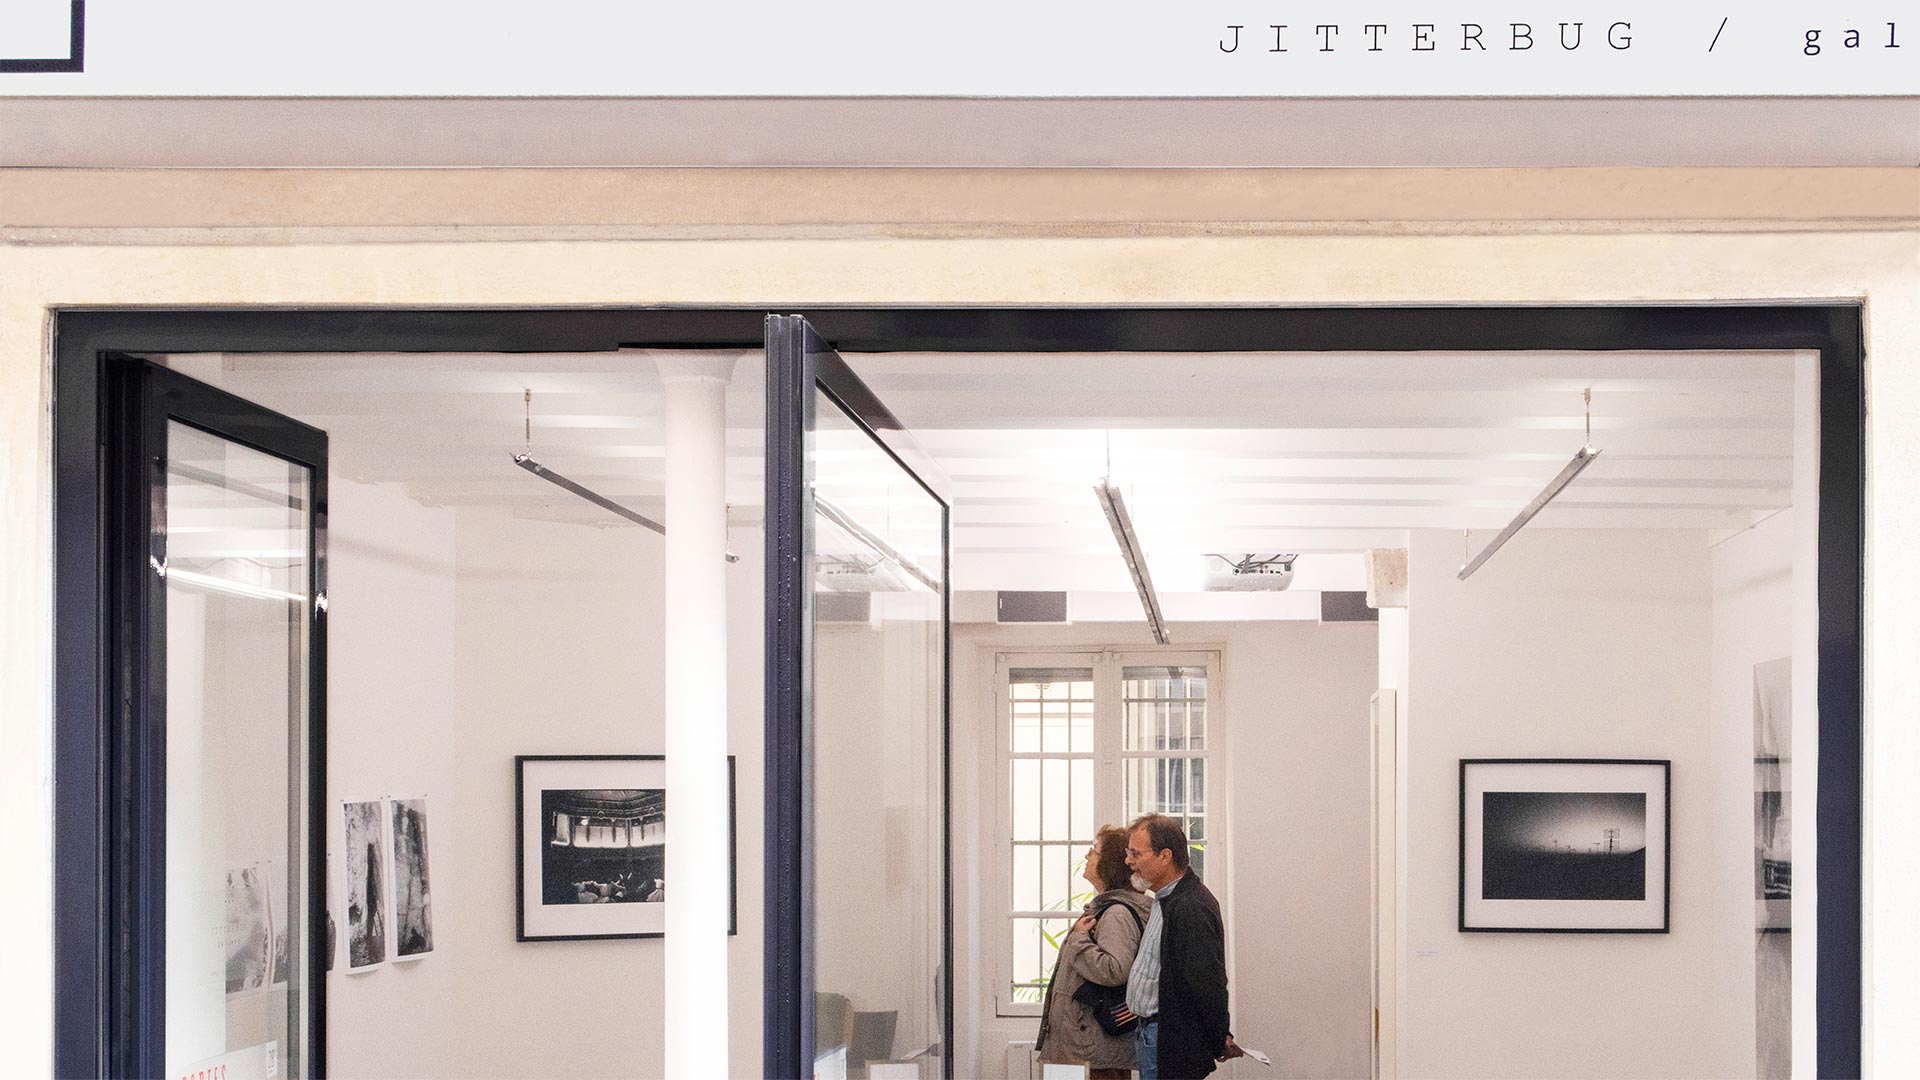 Jitterbug Gallery